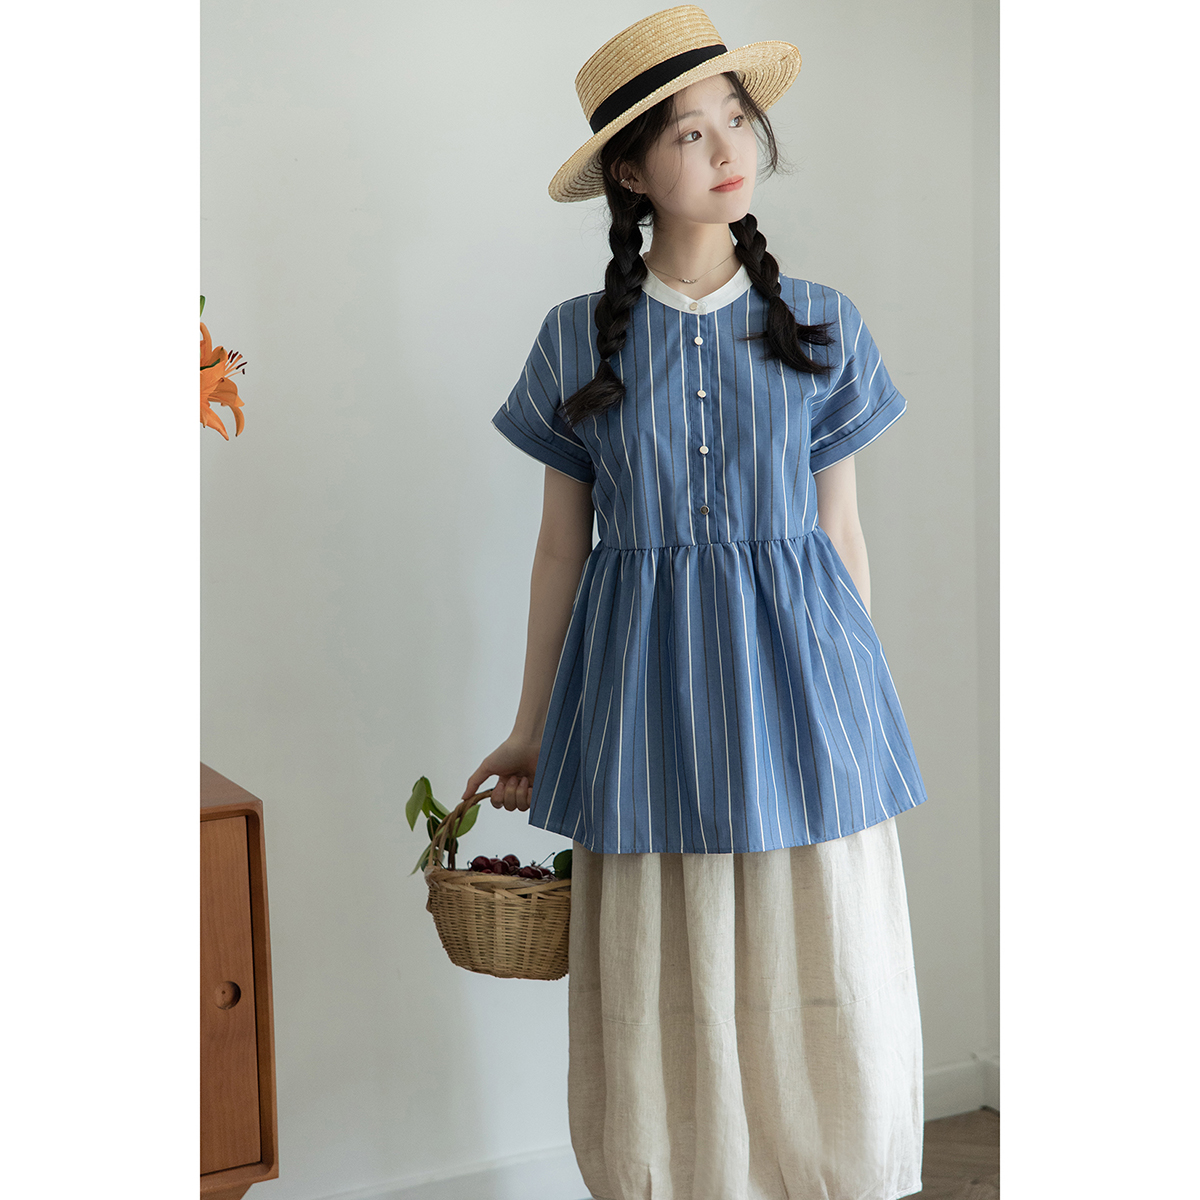 日本小众设计夏季短袖氧气少女感娃娃上衣法式复古竖条纹衬衫女